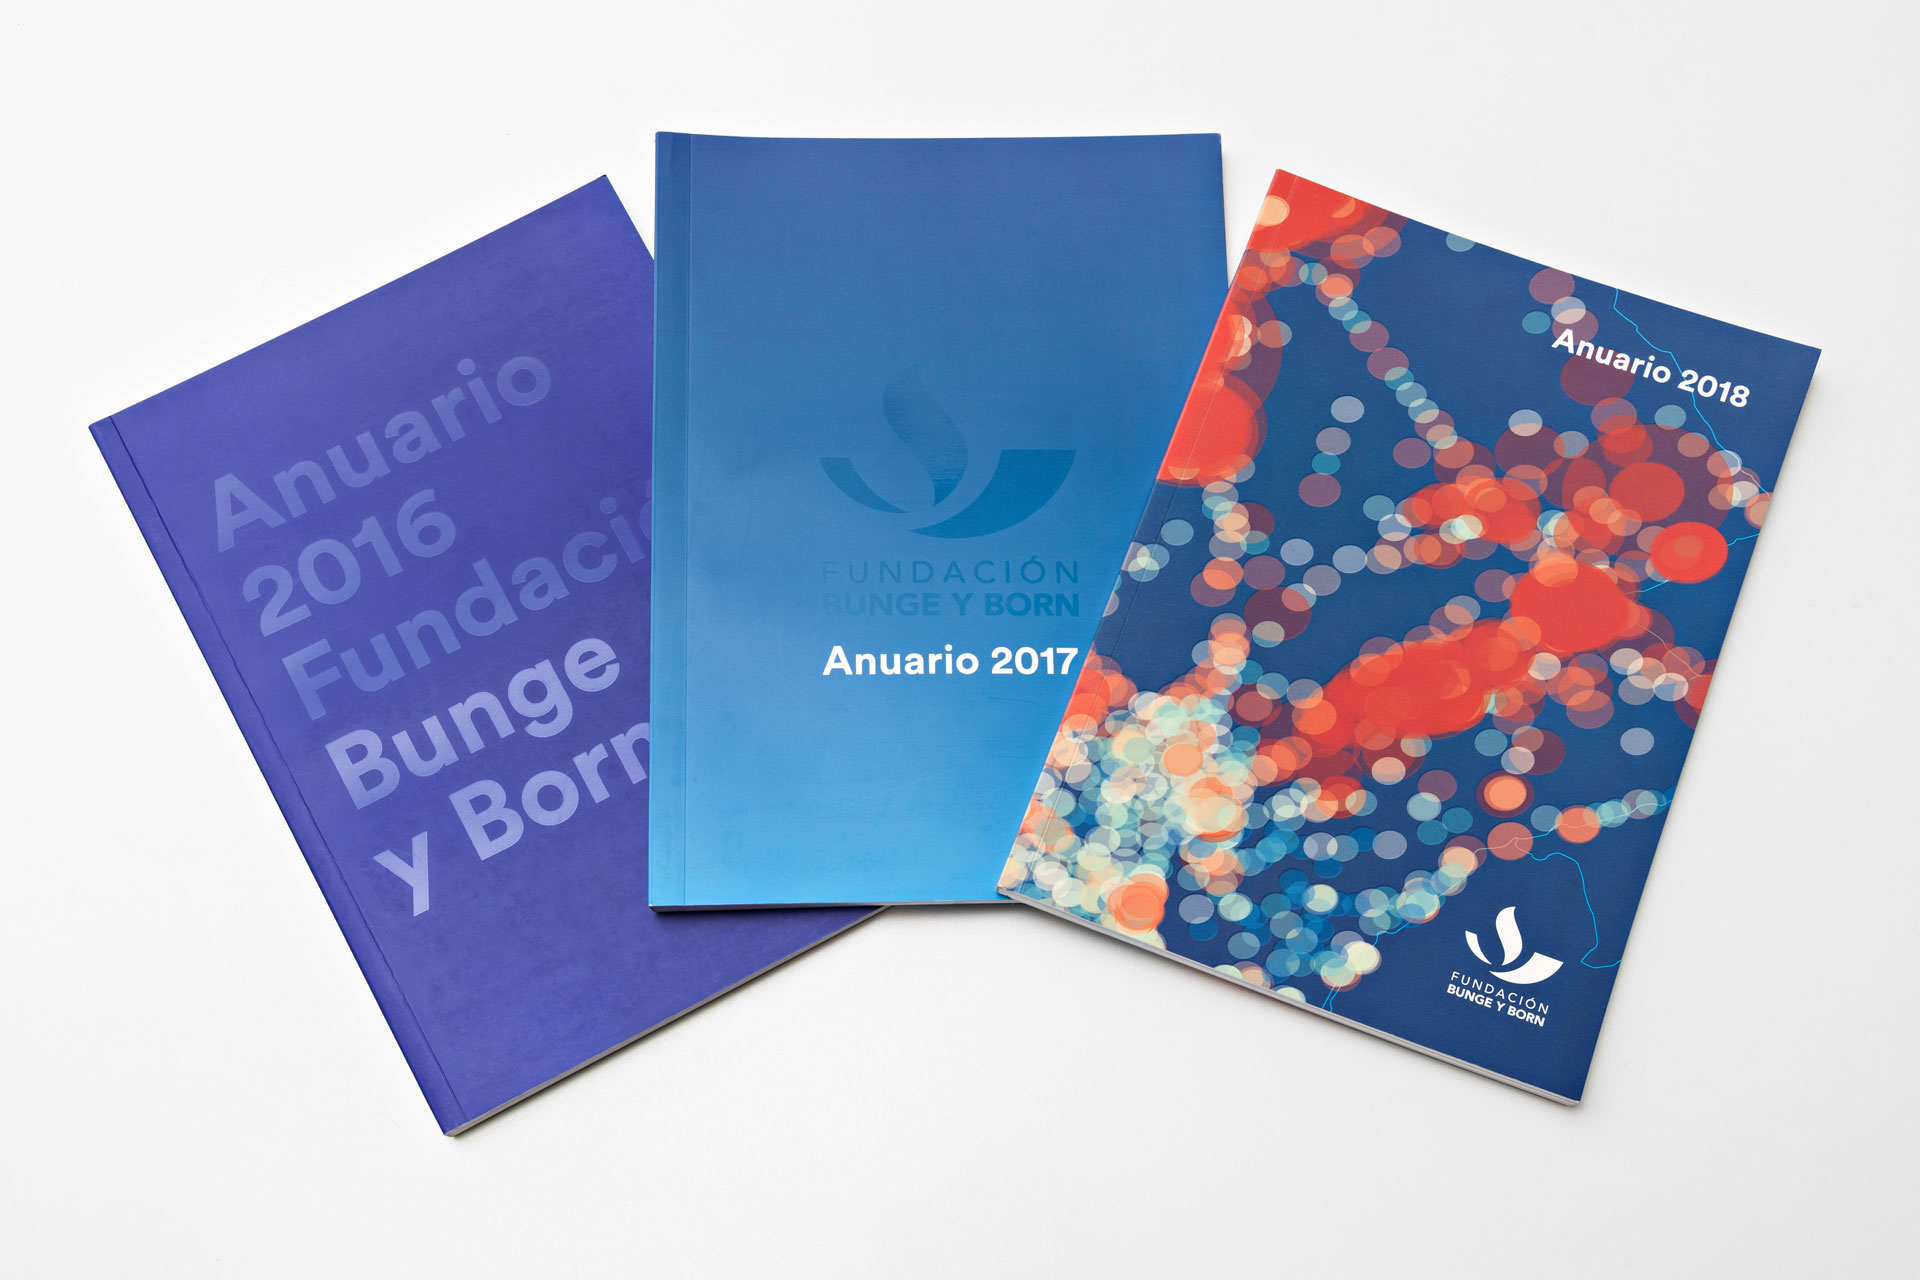 Fundación Bunge y Born Annual Reports